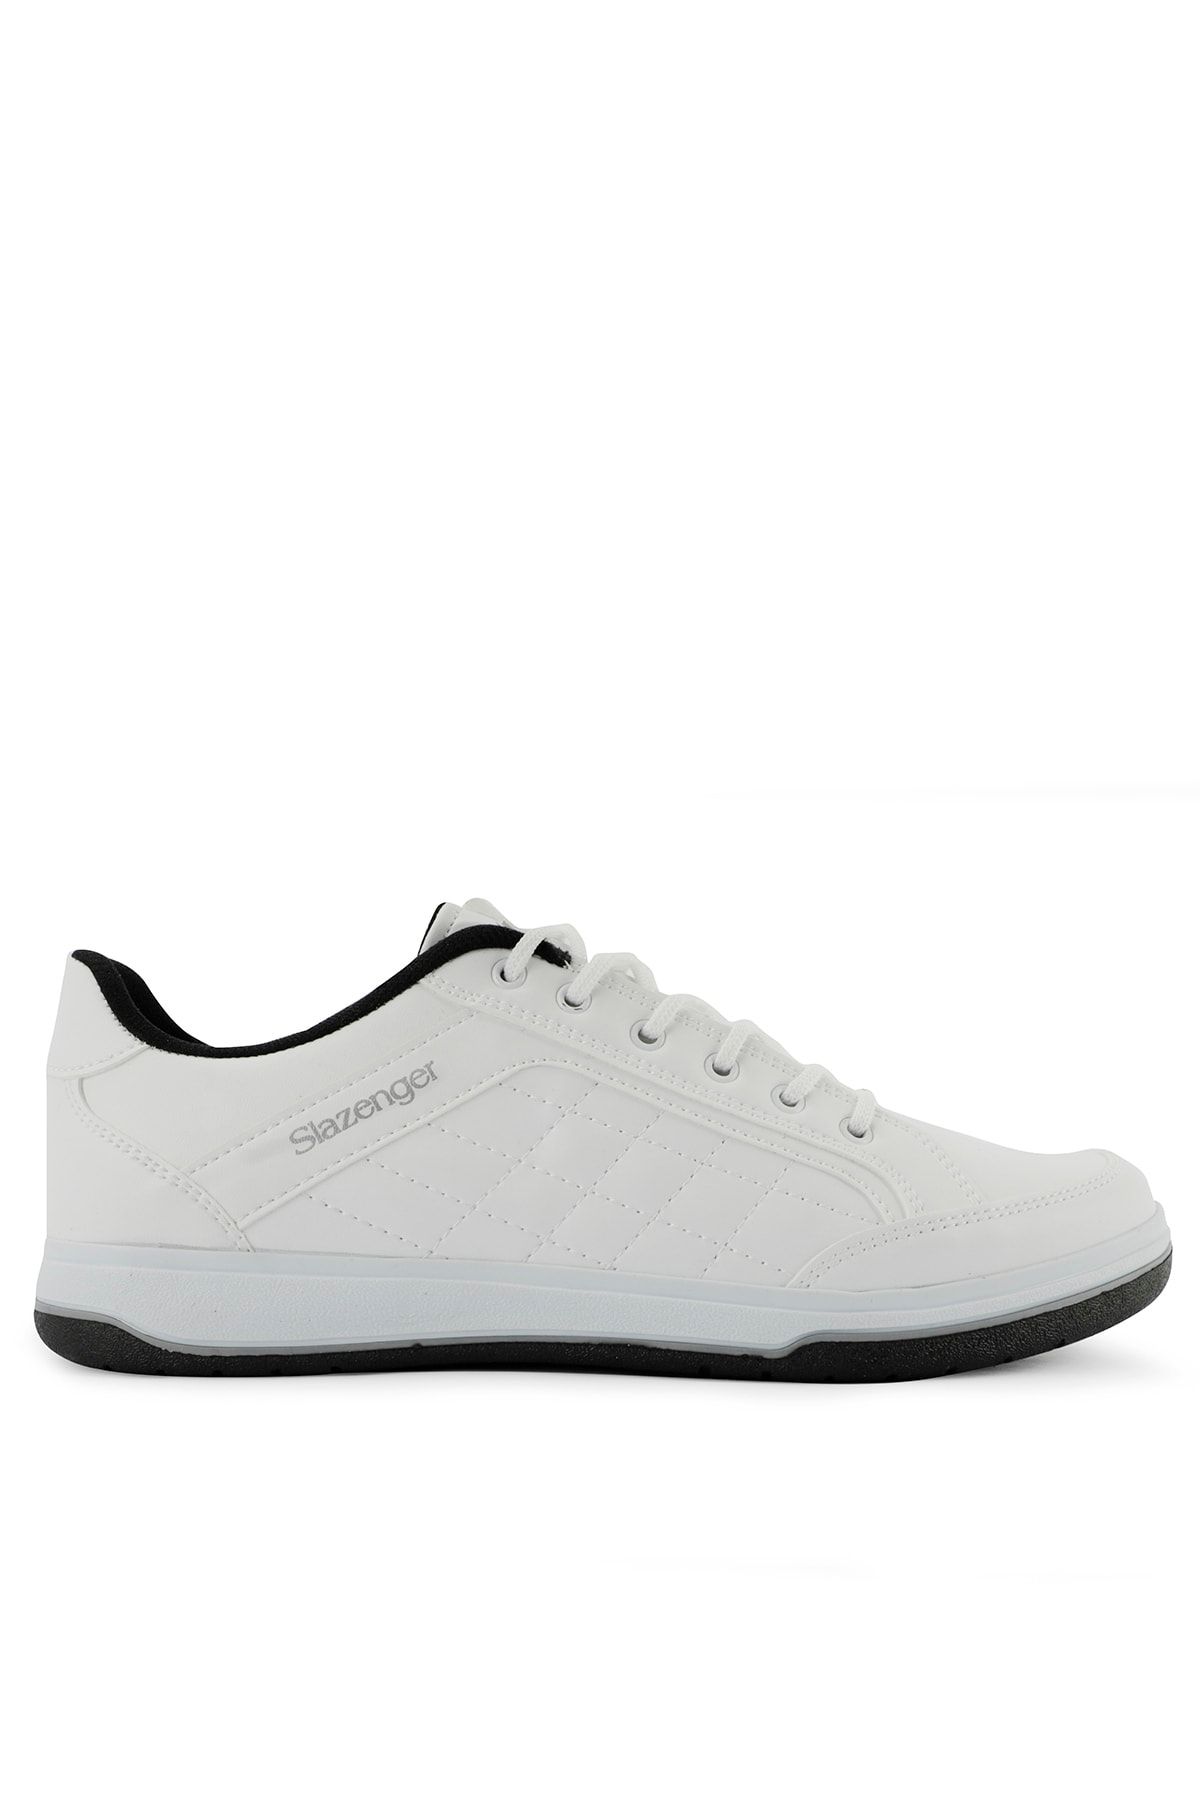 Slazenger Akın I Sneaker Erkek Ayakkabı Beyaz Sa11le040